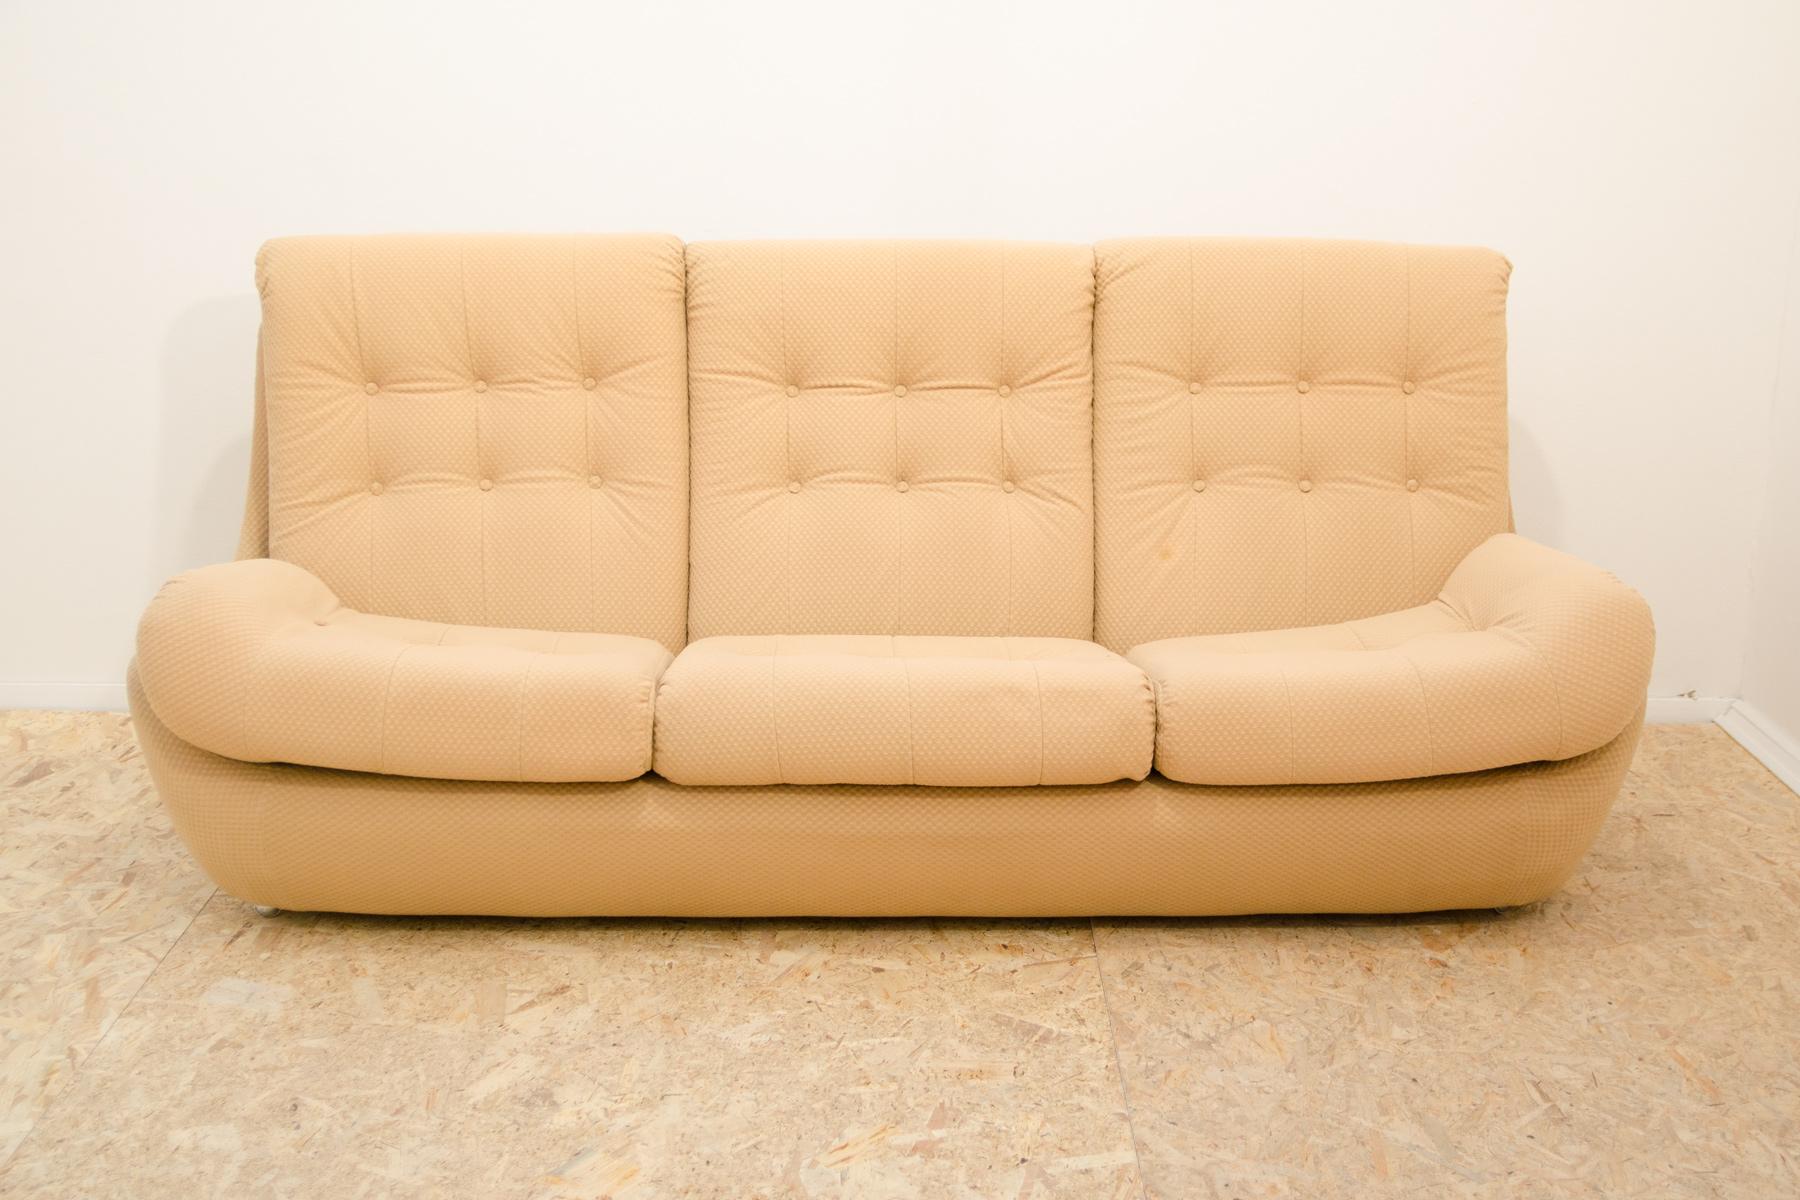 Ce canapé vintage est un exemple typique du design des meubles des années 1970/1980 dans l'ancienne Tchécoslovaquie. Il a été fabriqué par la société Jitona dans les années 1970.

Le canapé est basé sur une moulure en polystyrène solide et légère,